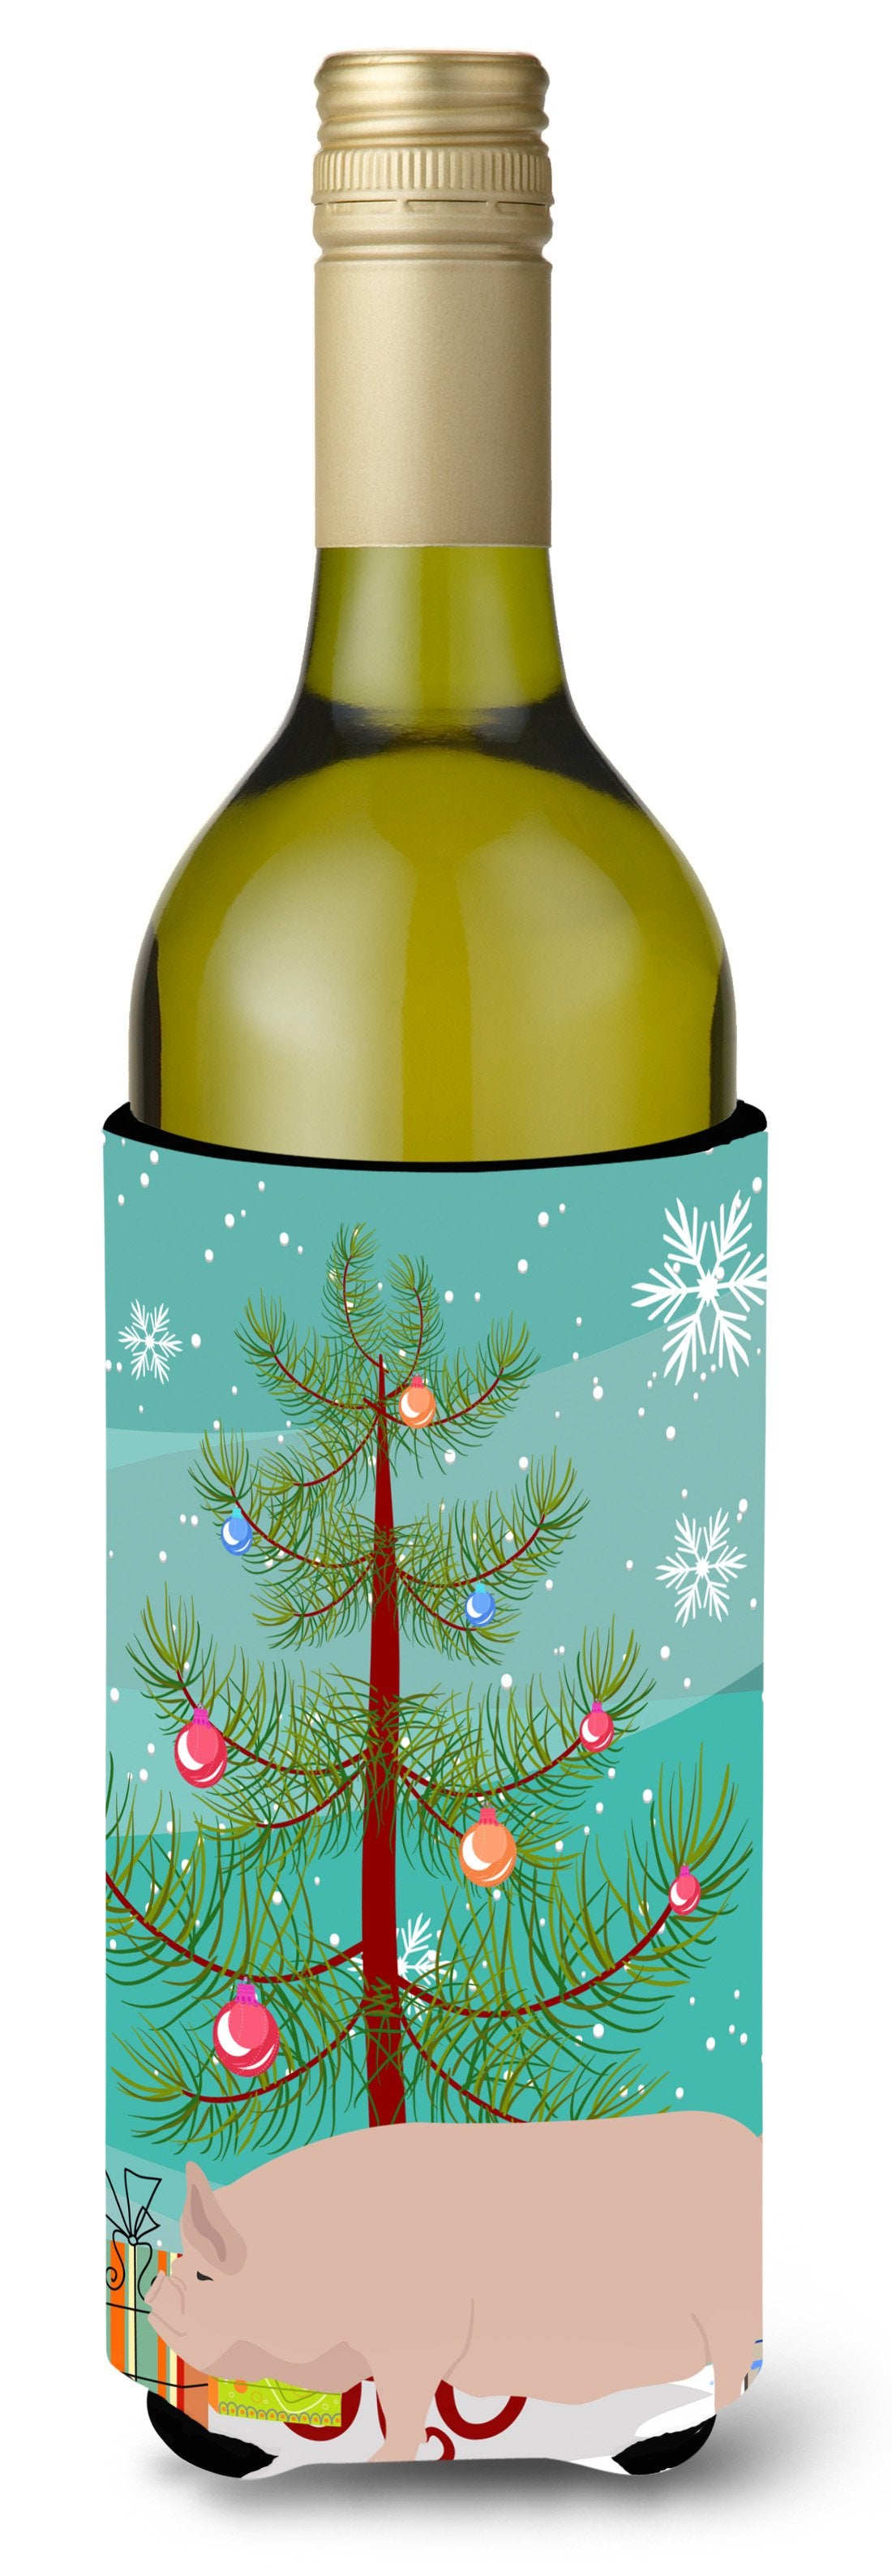 Welsh Pig Christmas Wine Bottle Beverge Insulator Hugger BB9304LITERK by Caroline's Treasures